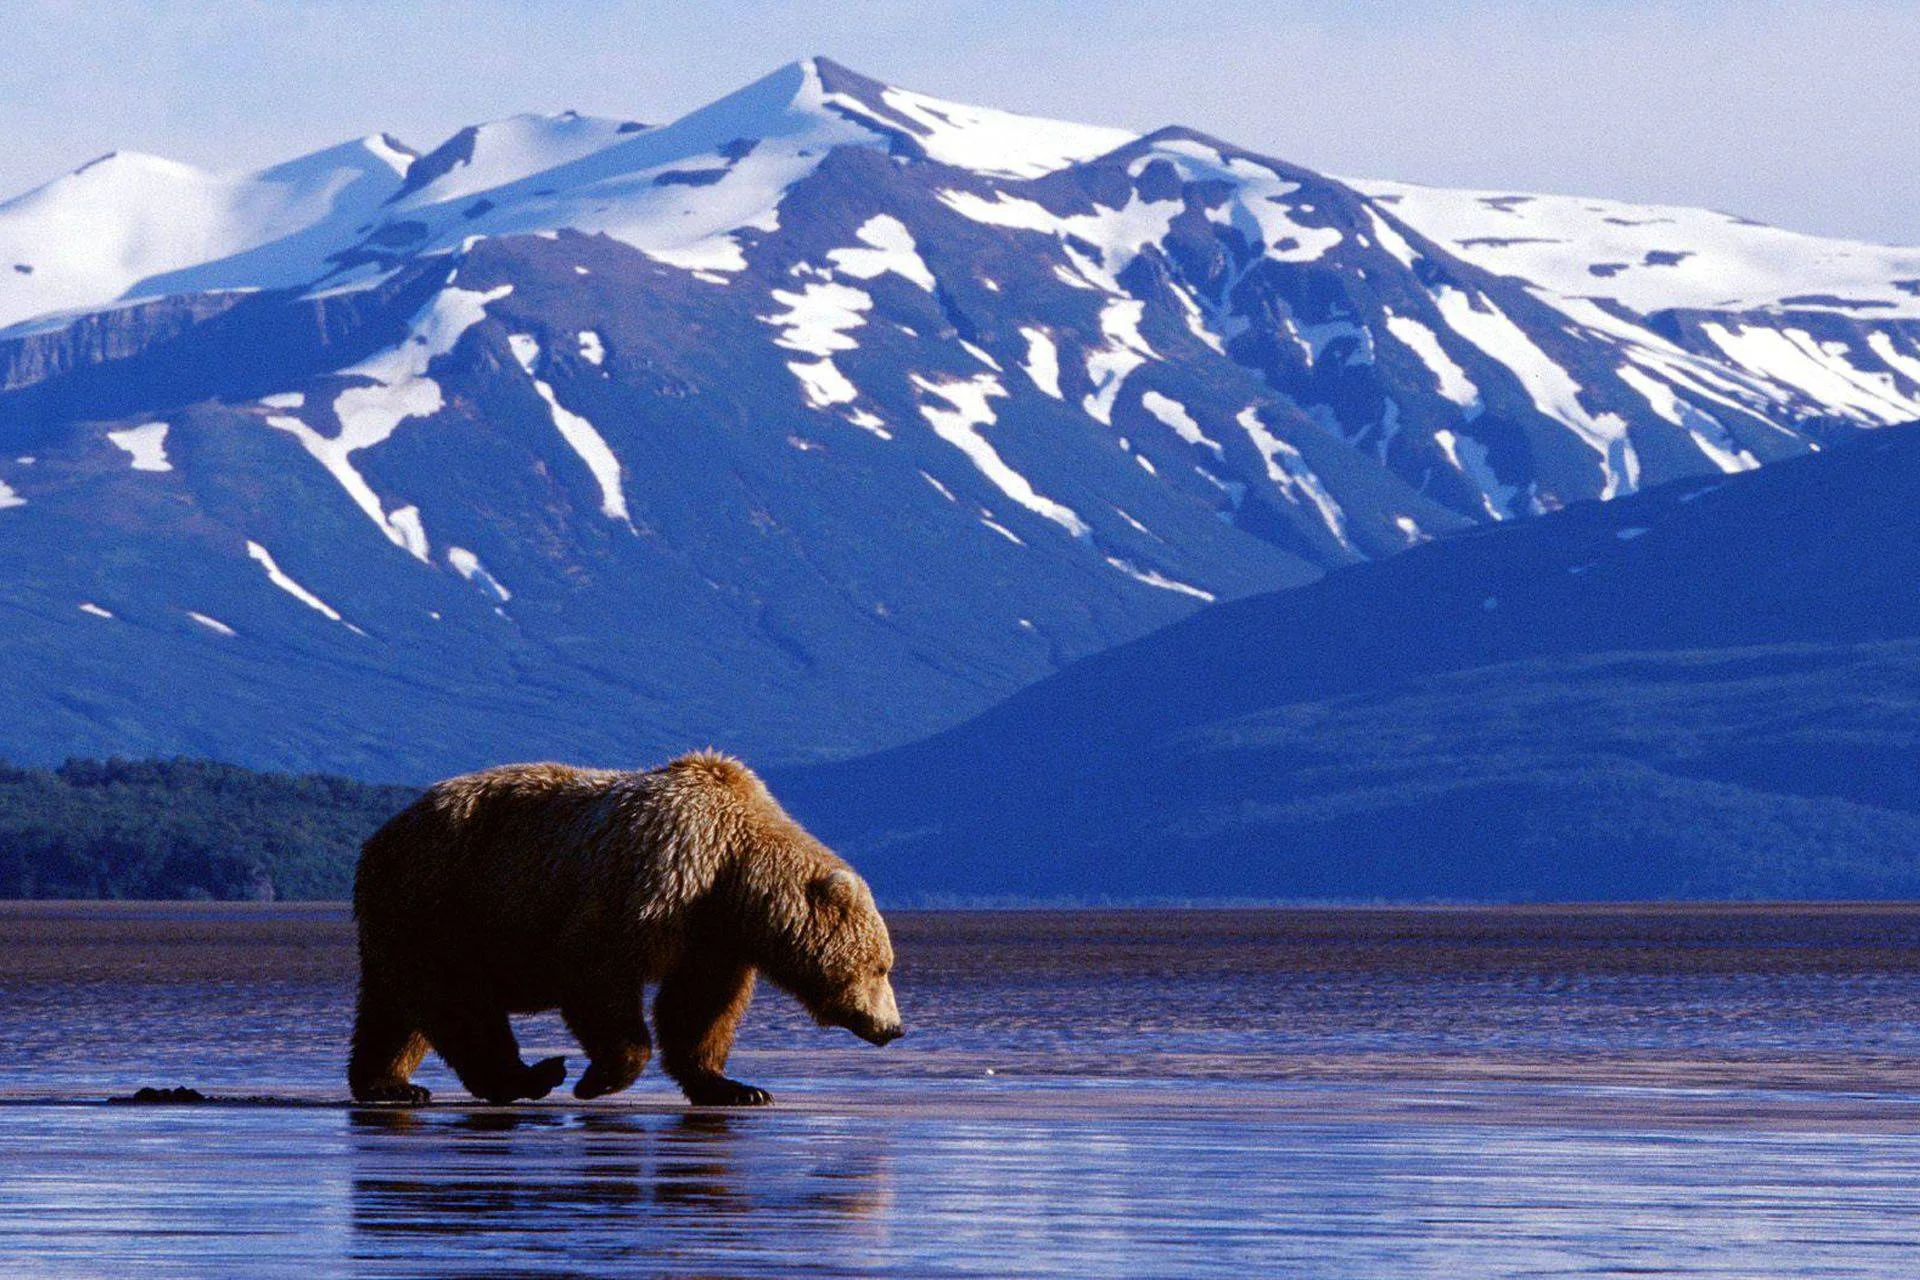 Обитатели аляски. Северная Америка медведь Гризли. Медведь Гризли на Аляске. Национальный парк Денали Аляска. Гризли североамериканский бурый медведь.